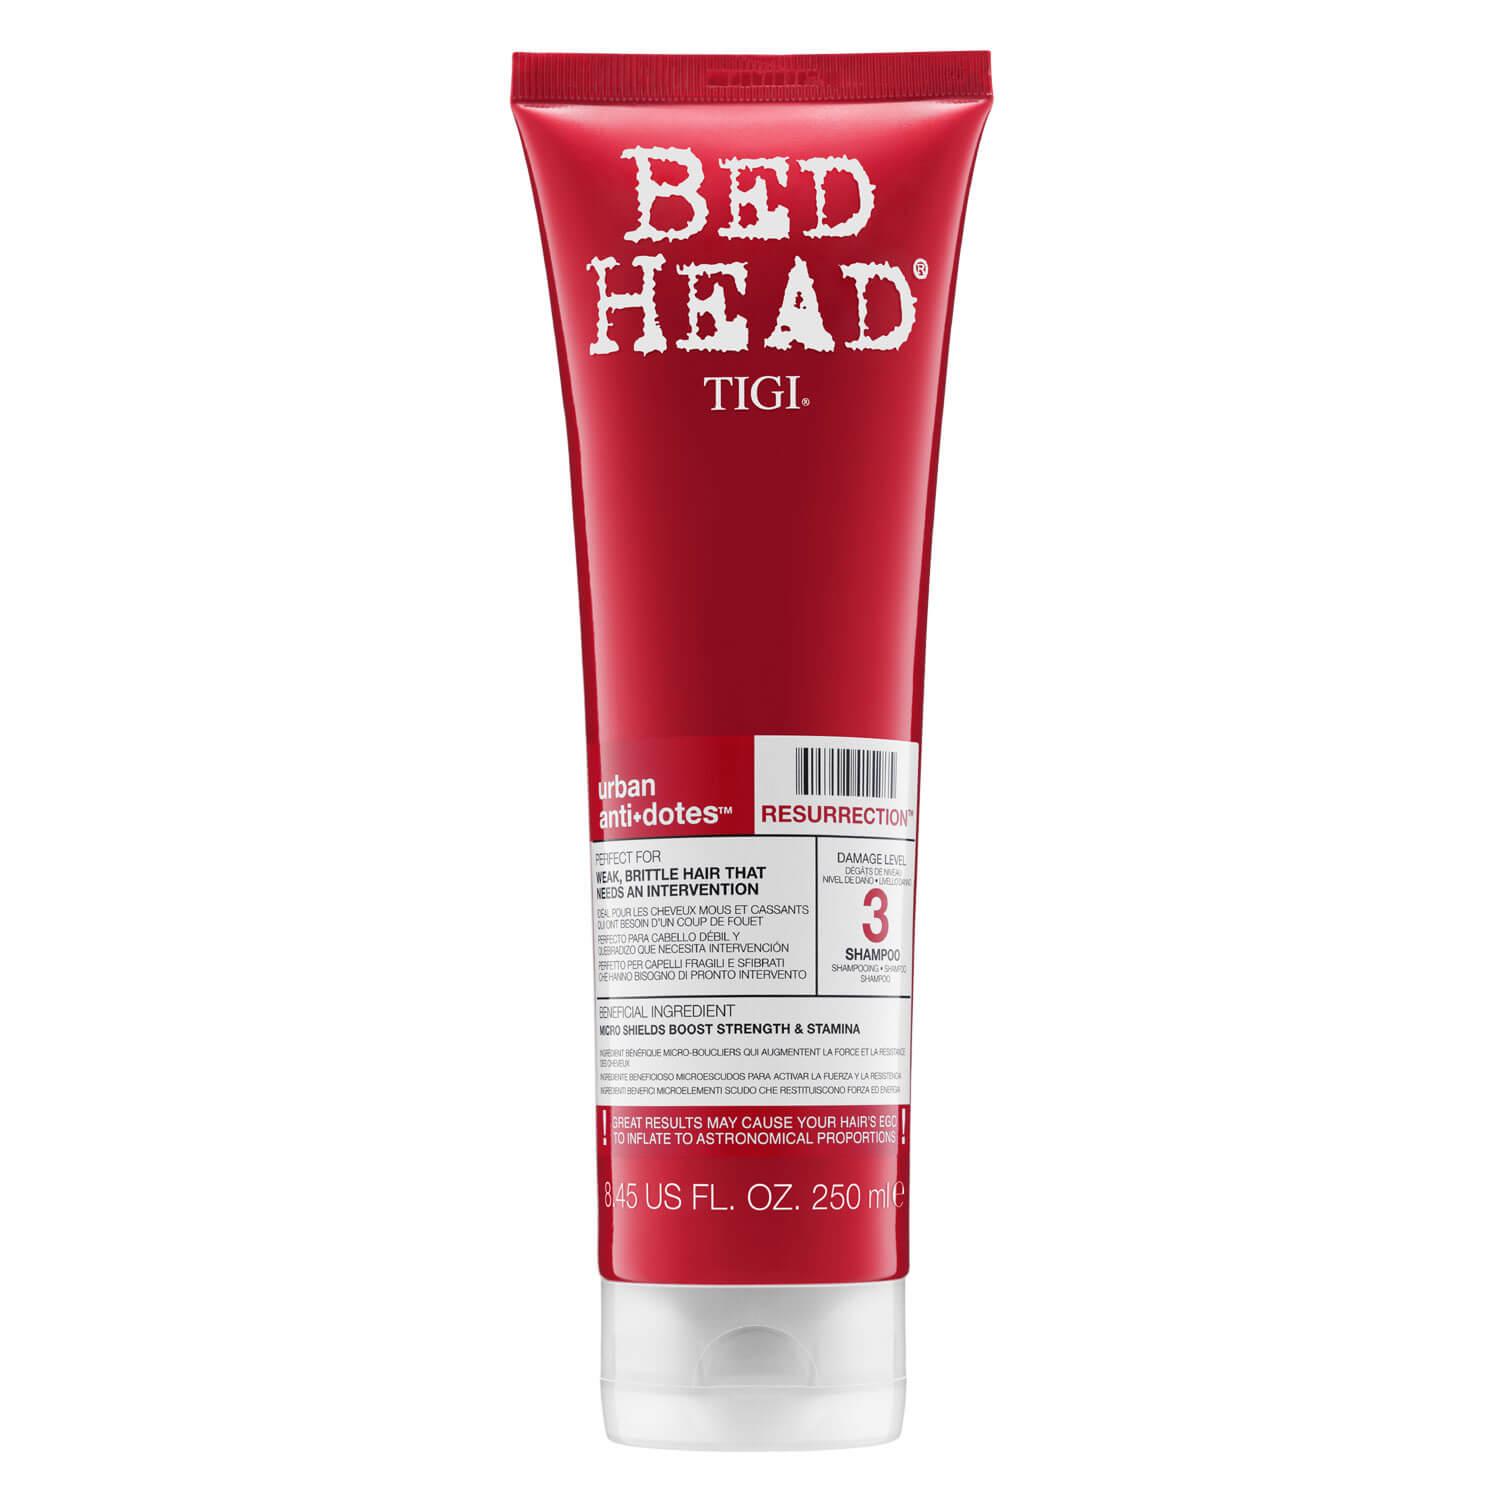 Bed Head Urban Antidotes - Resurrection Shampoo